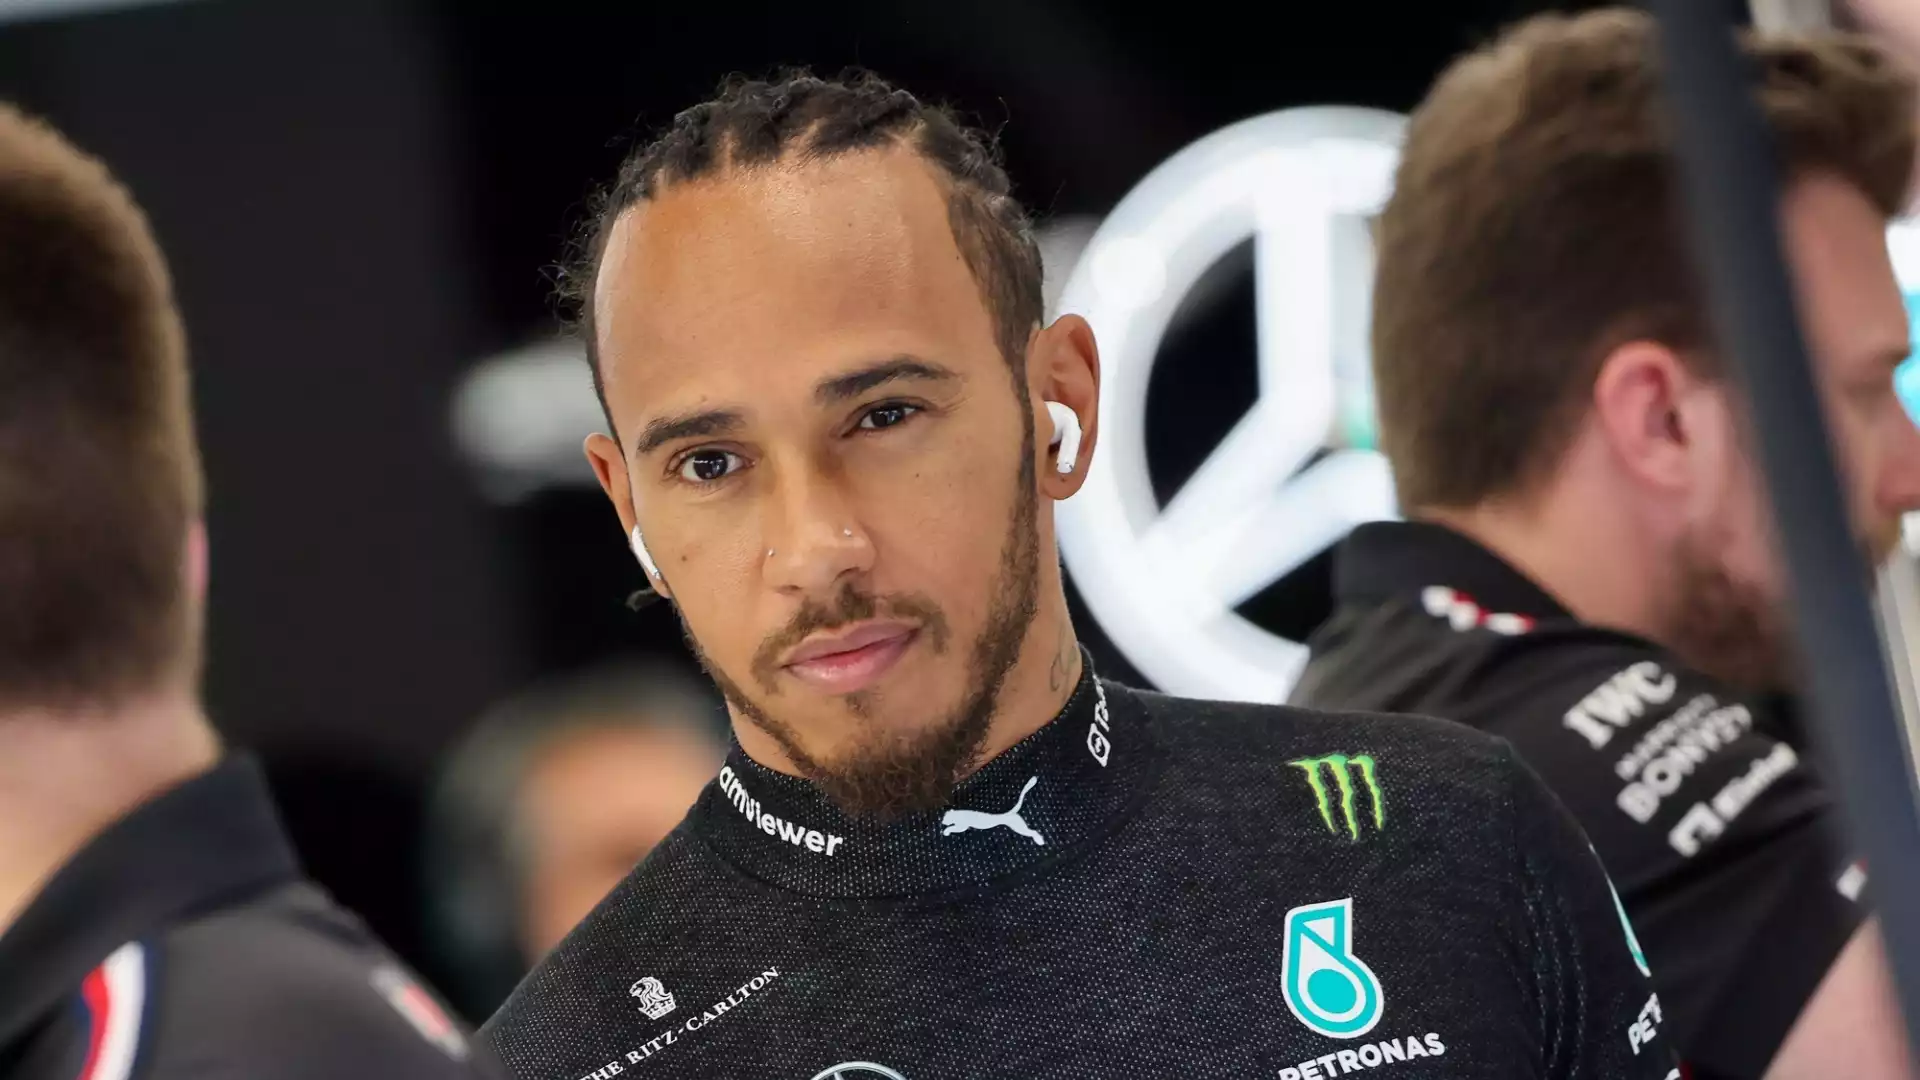 Futuro Lewis Hamilton, Berger è sicuro: “Tutti vogliono la Ferrari”